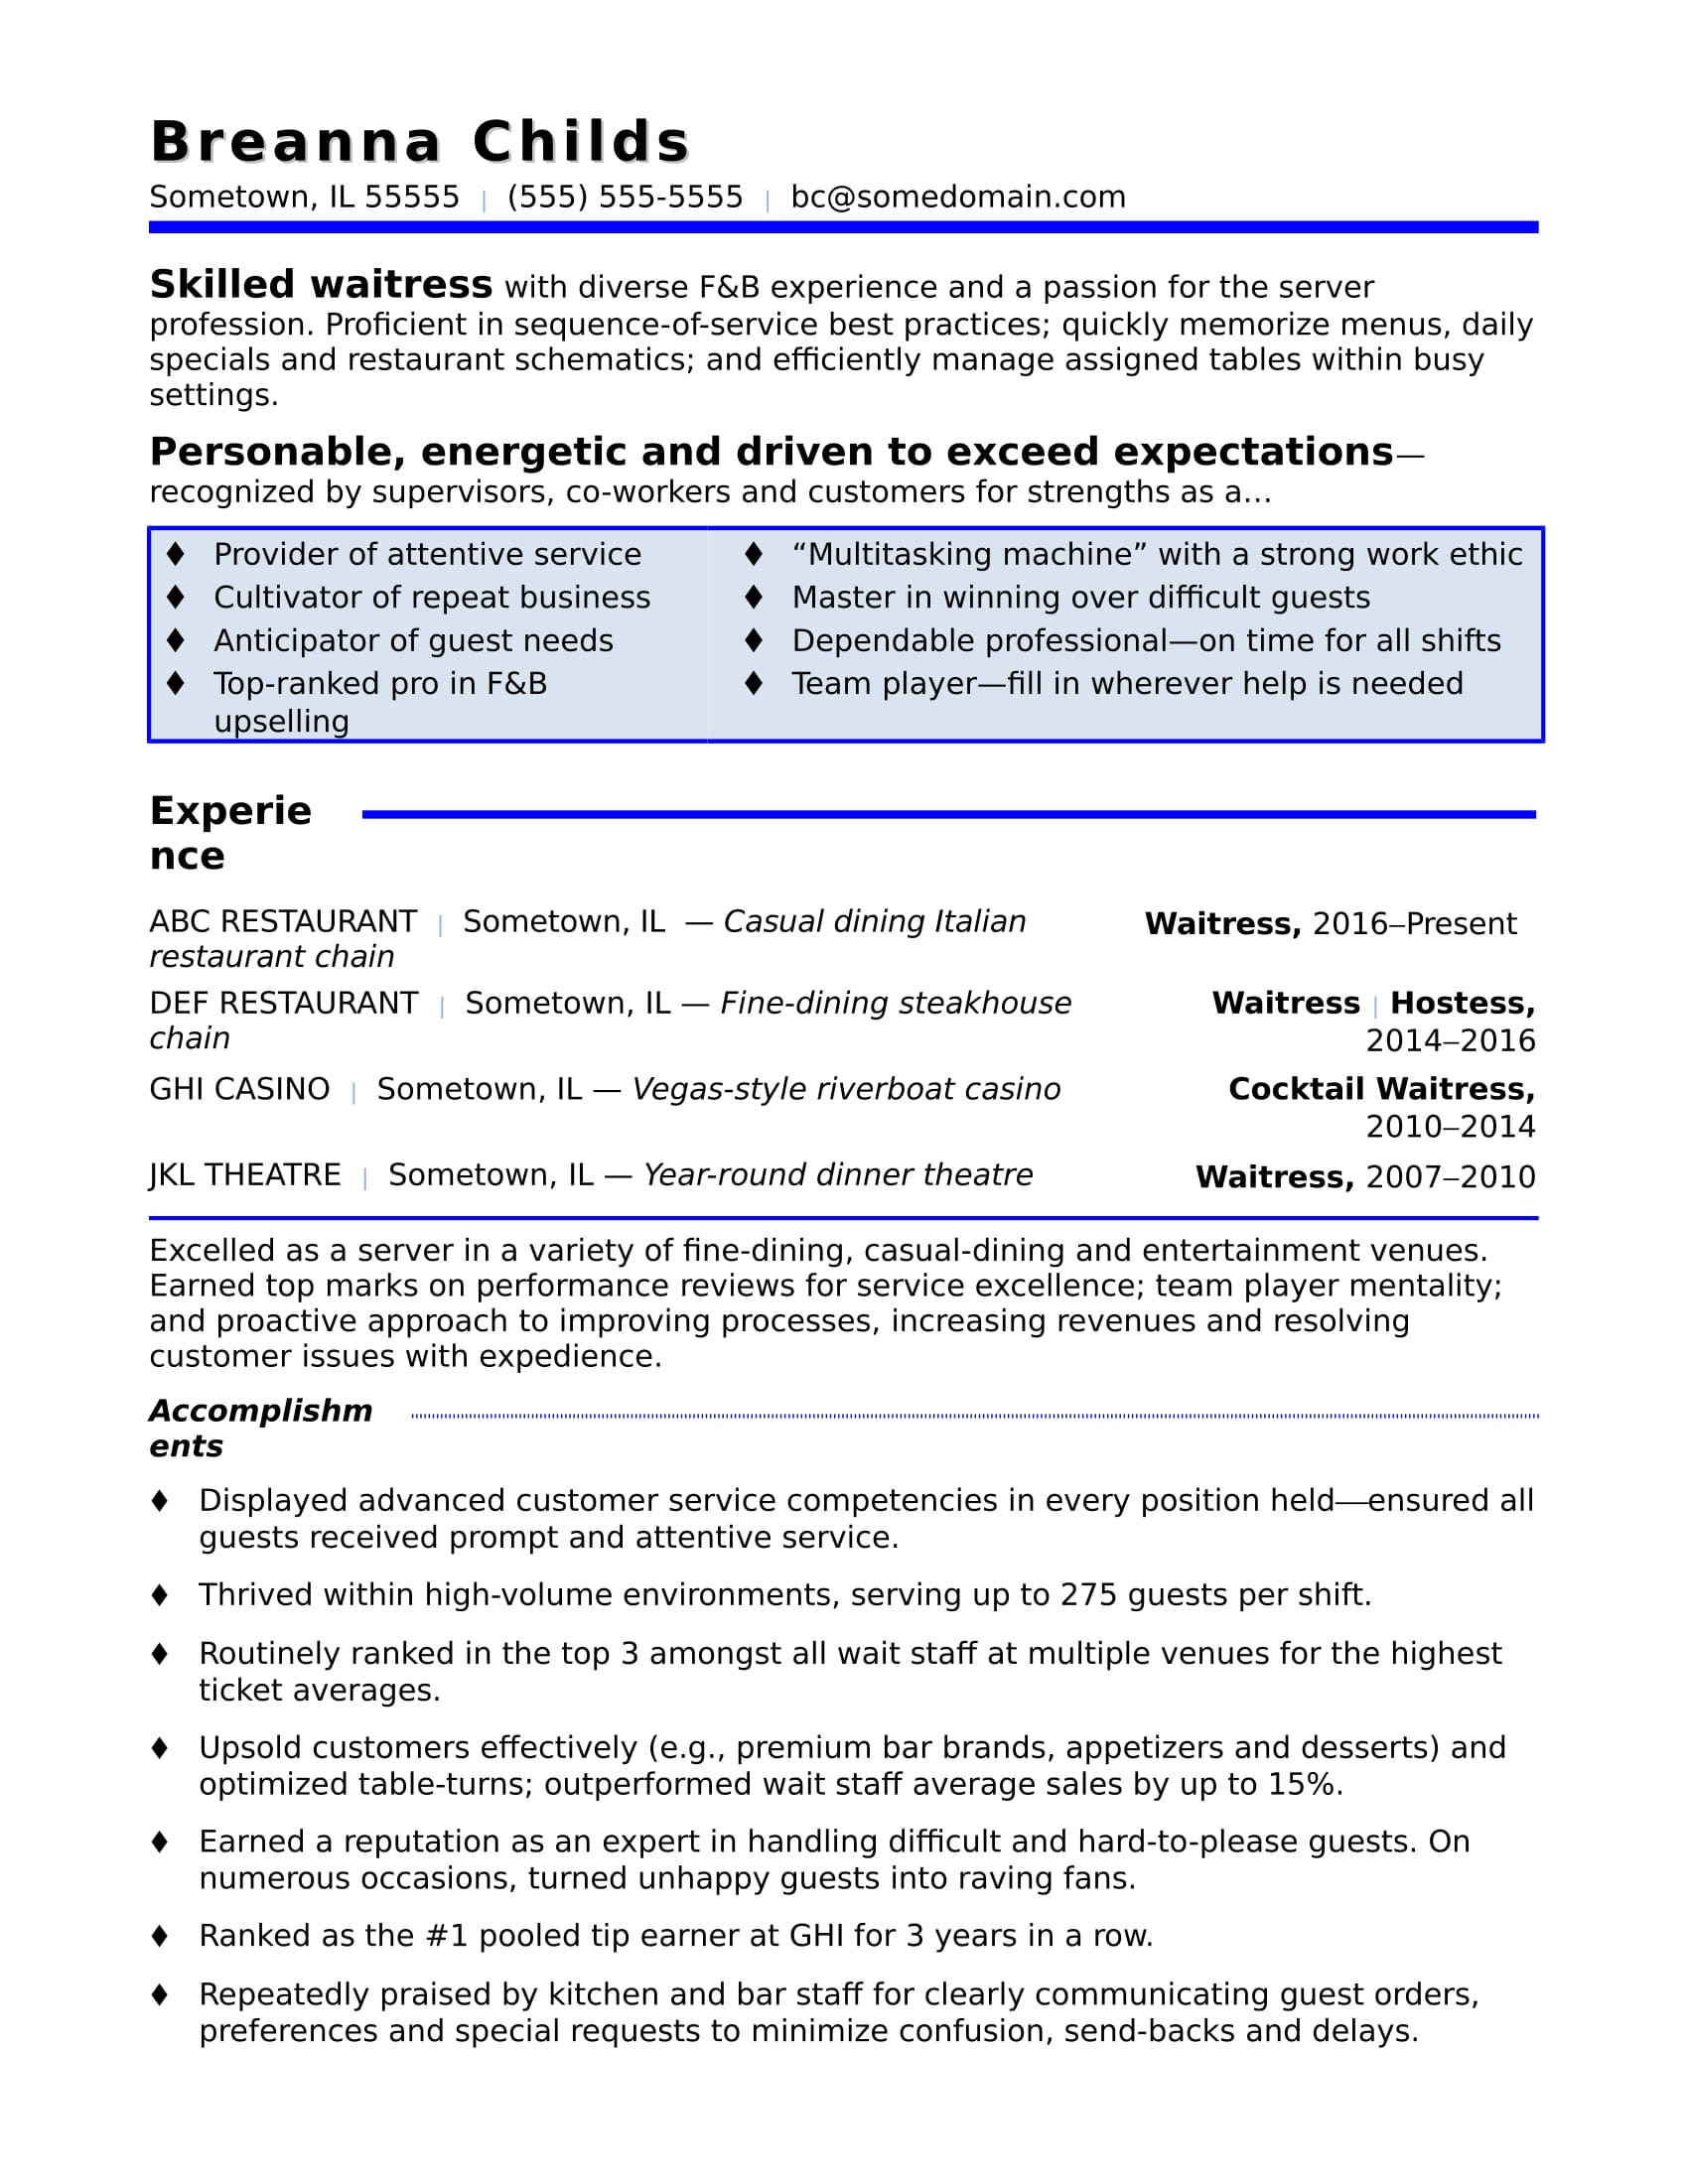 Sample Of Resume for Waitress Position Waitress Resume Sample Monster.com